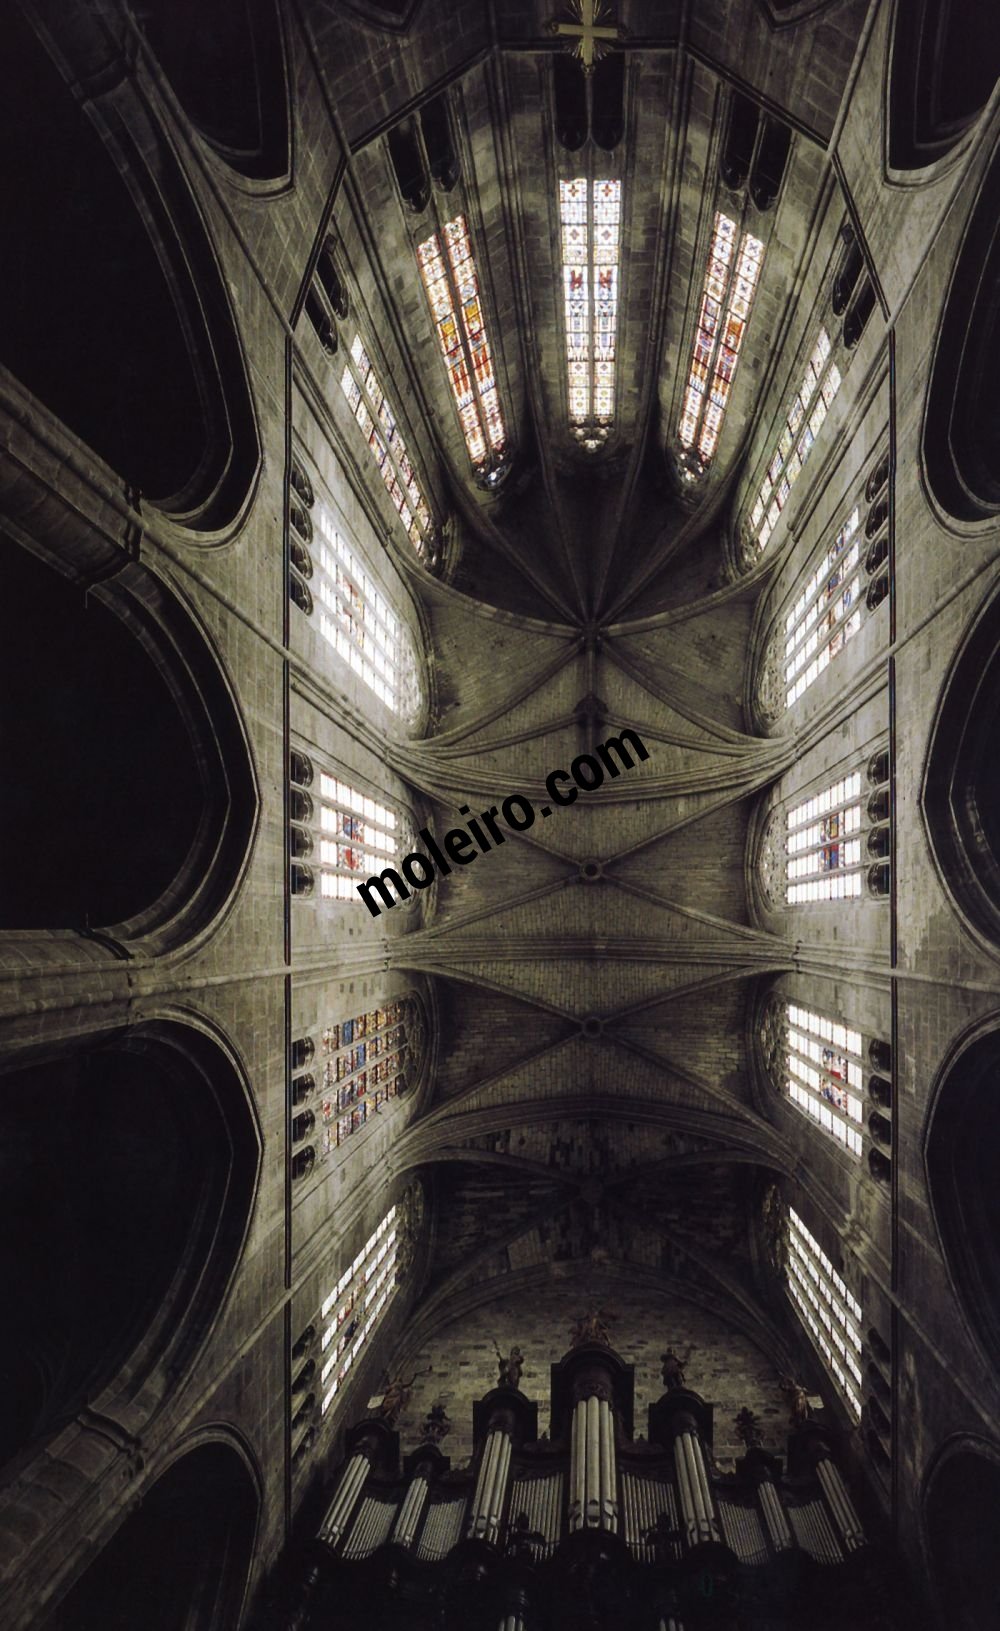 Talleres de Arquitectura en la Edad Media Narbona, França, interior da catedral, abóbada de coro, séculos XIII e XIV
